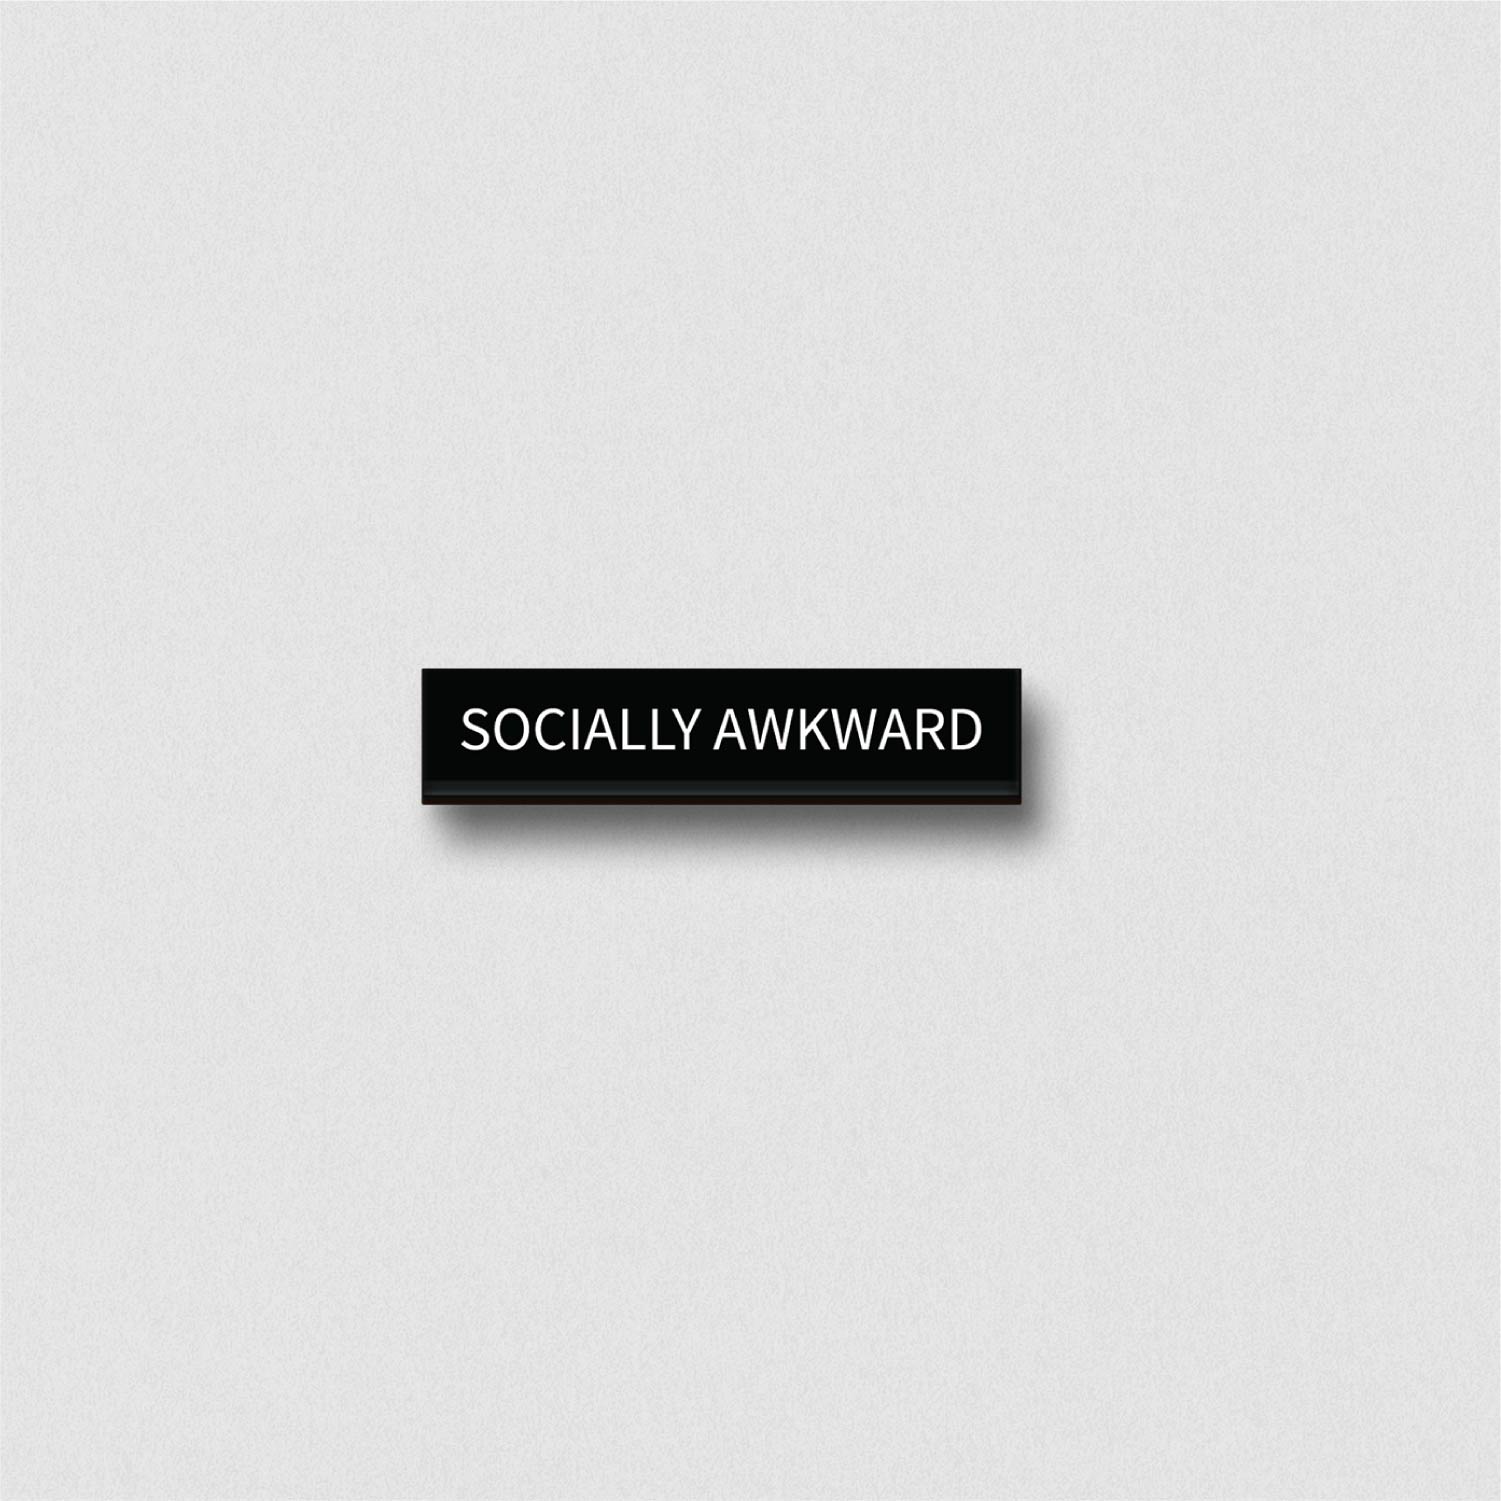 The Socially Awkward Pin